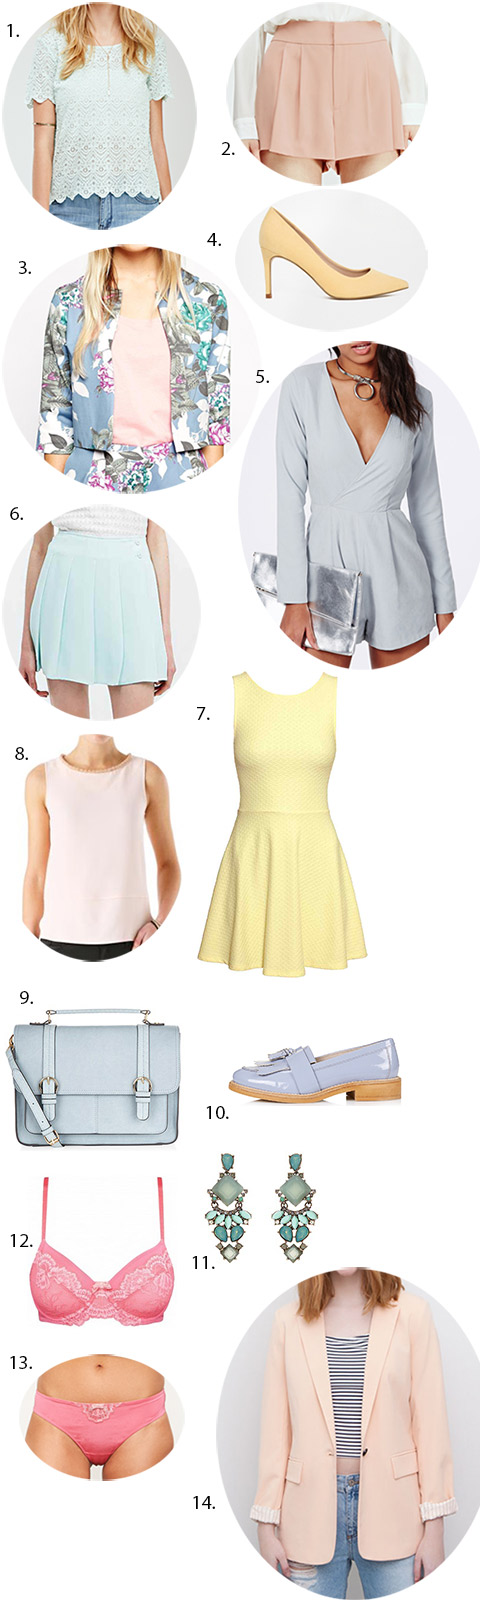 shopping-mode-pastel-printemps-2015